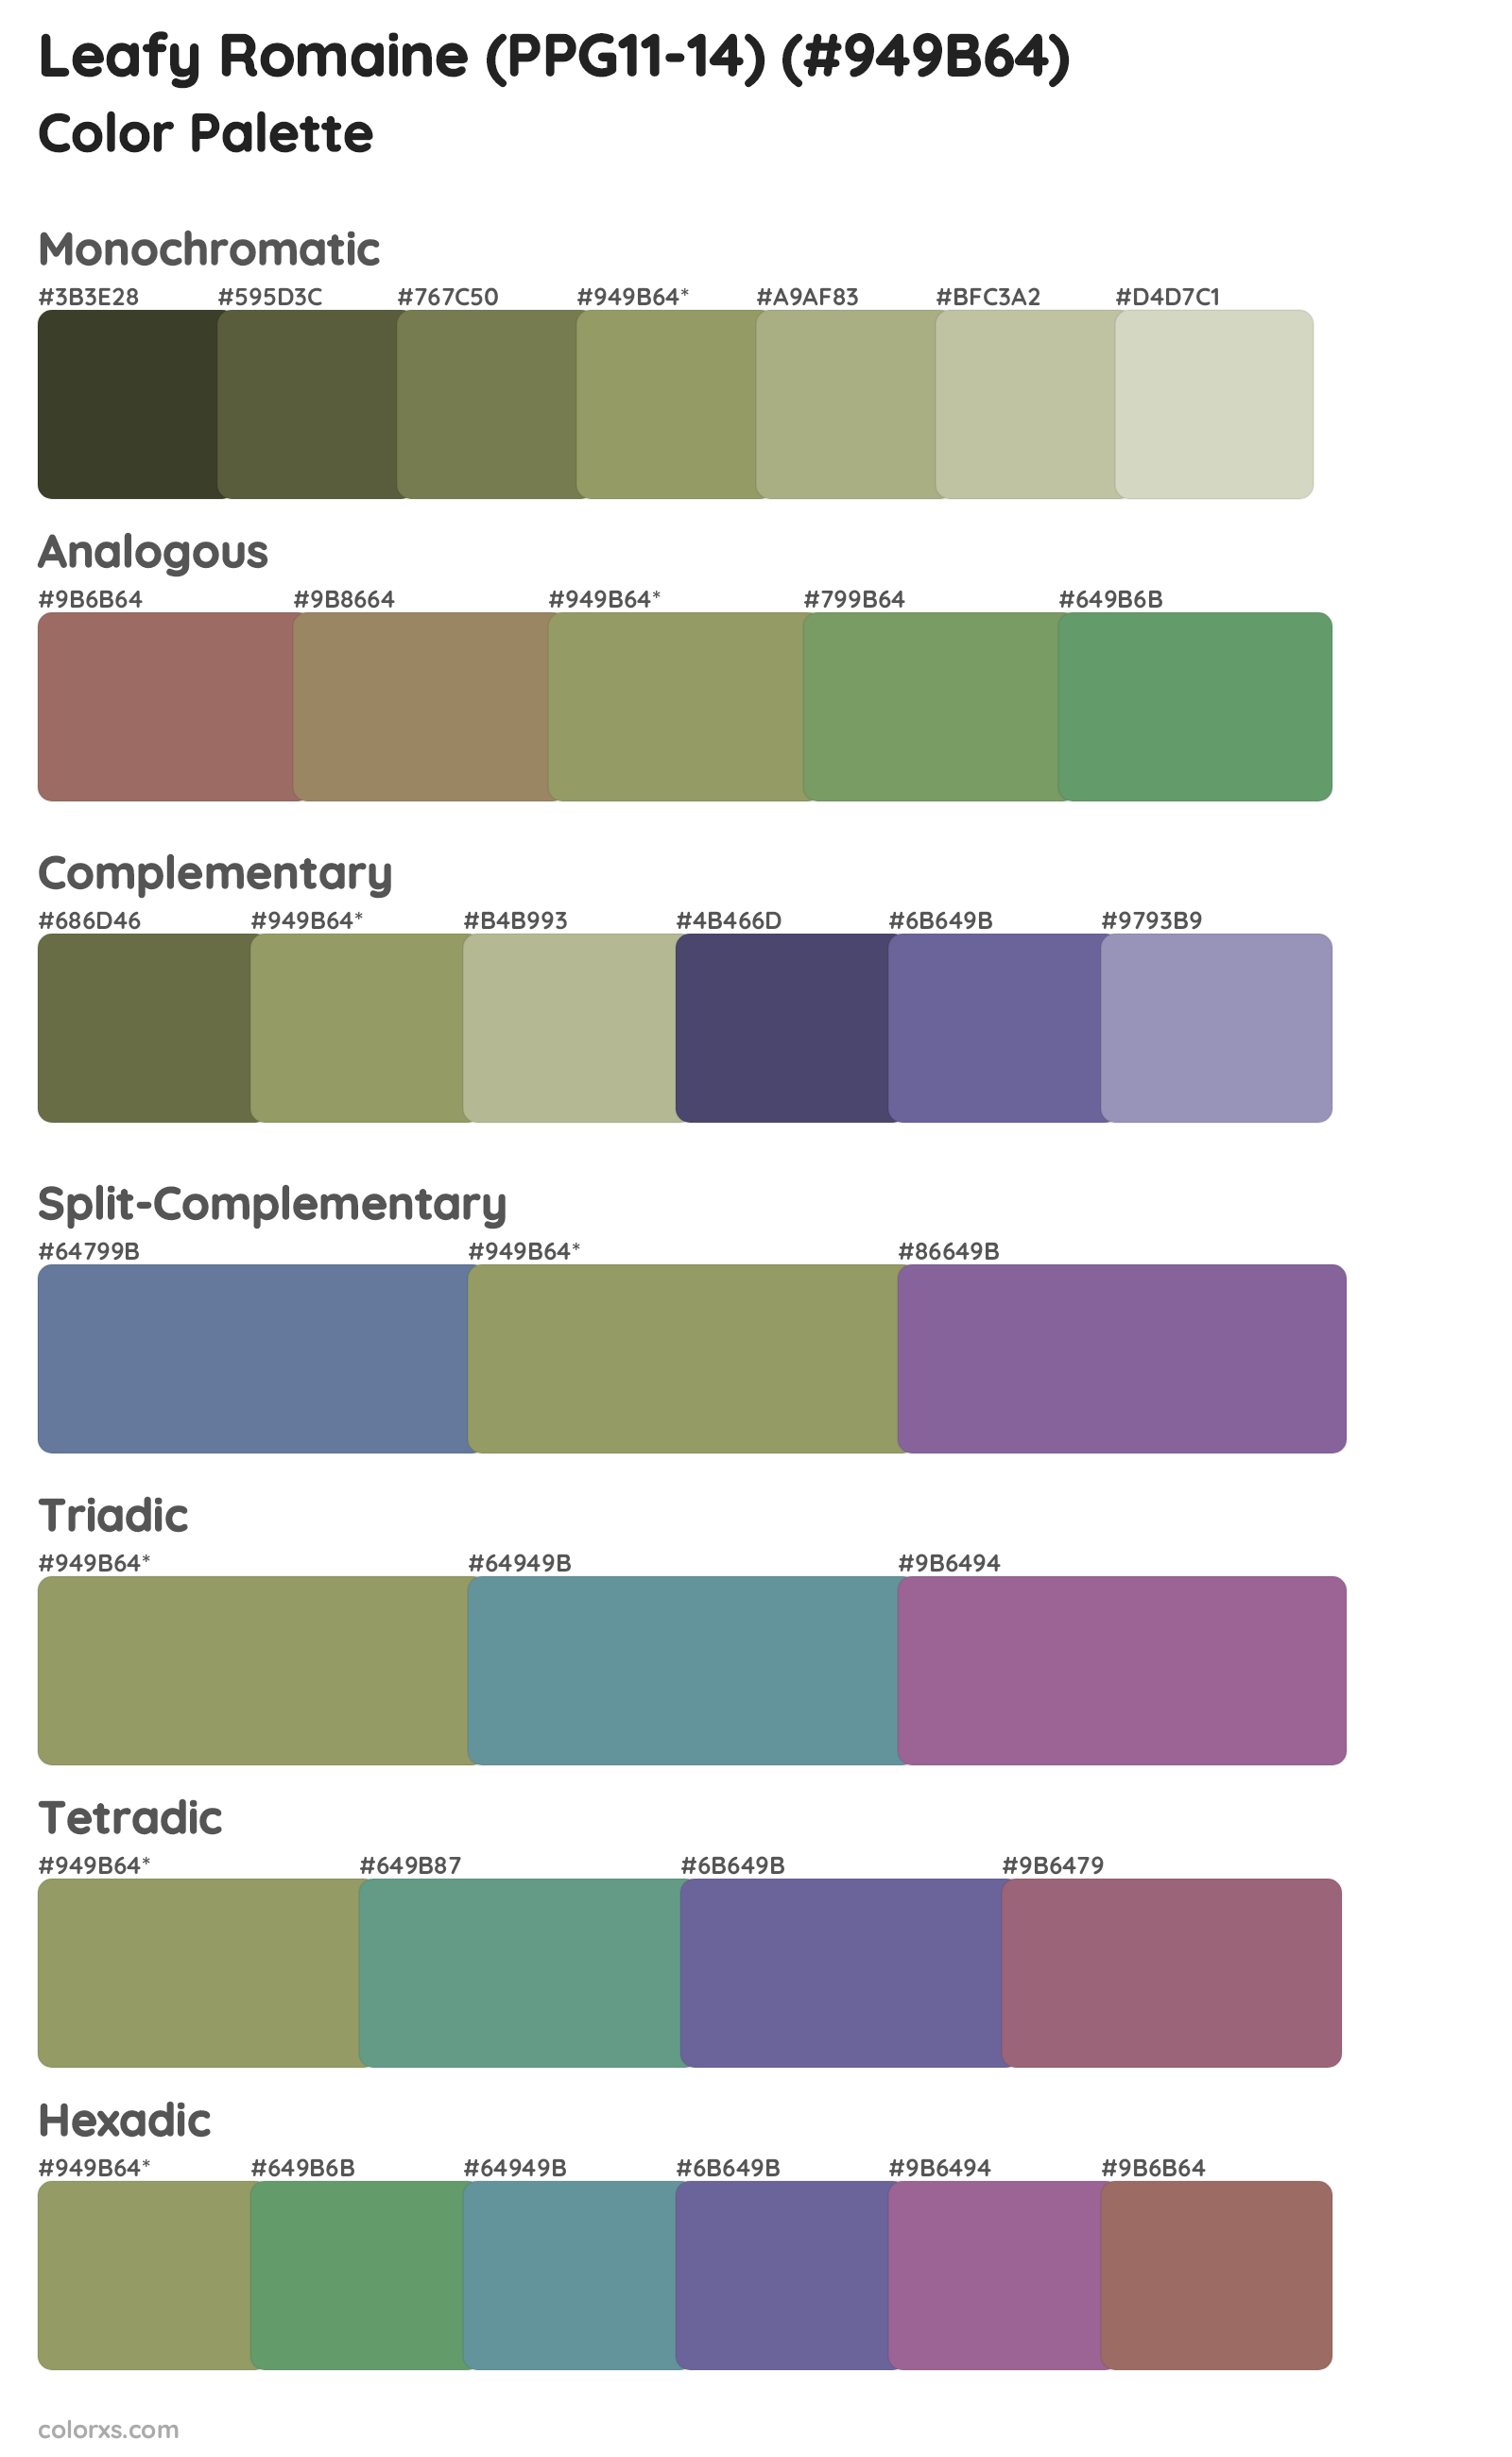 Leafy Romaine (PPG11-14) Color Scheme Palettes